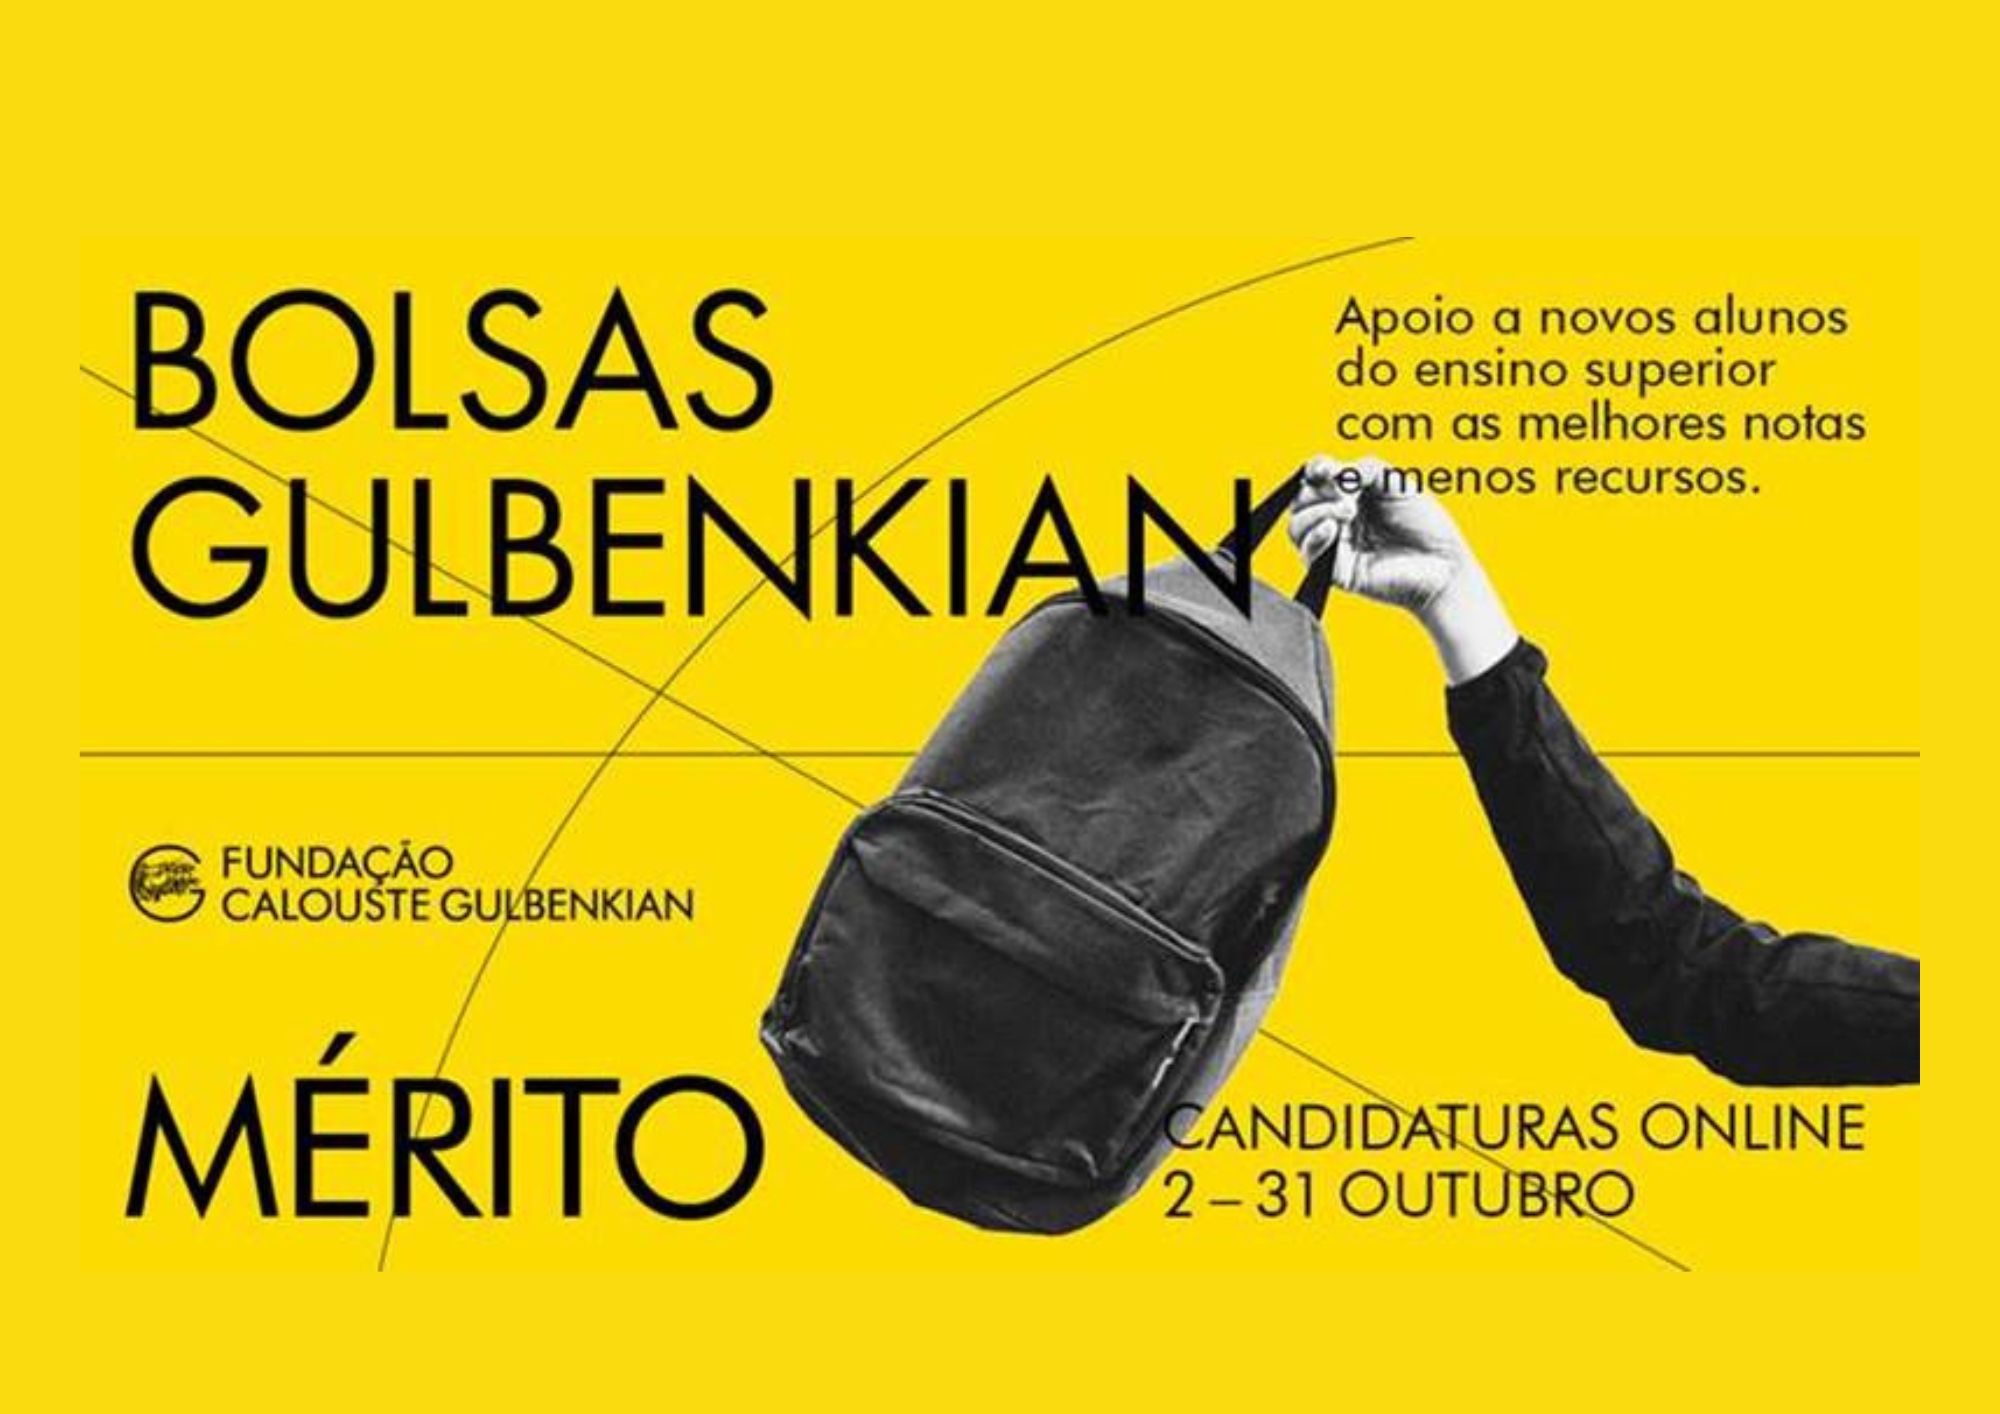 Candidaturas abertas para Bolsas de mérito da Gulbenkian, até 31 de outubro